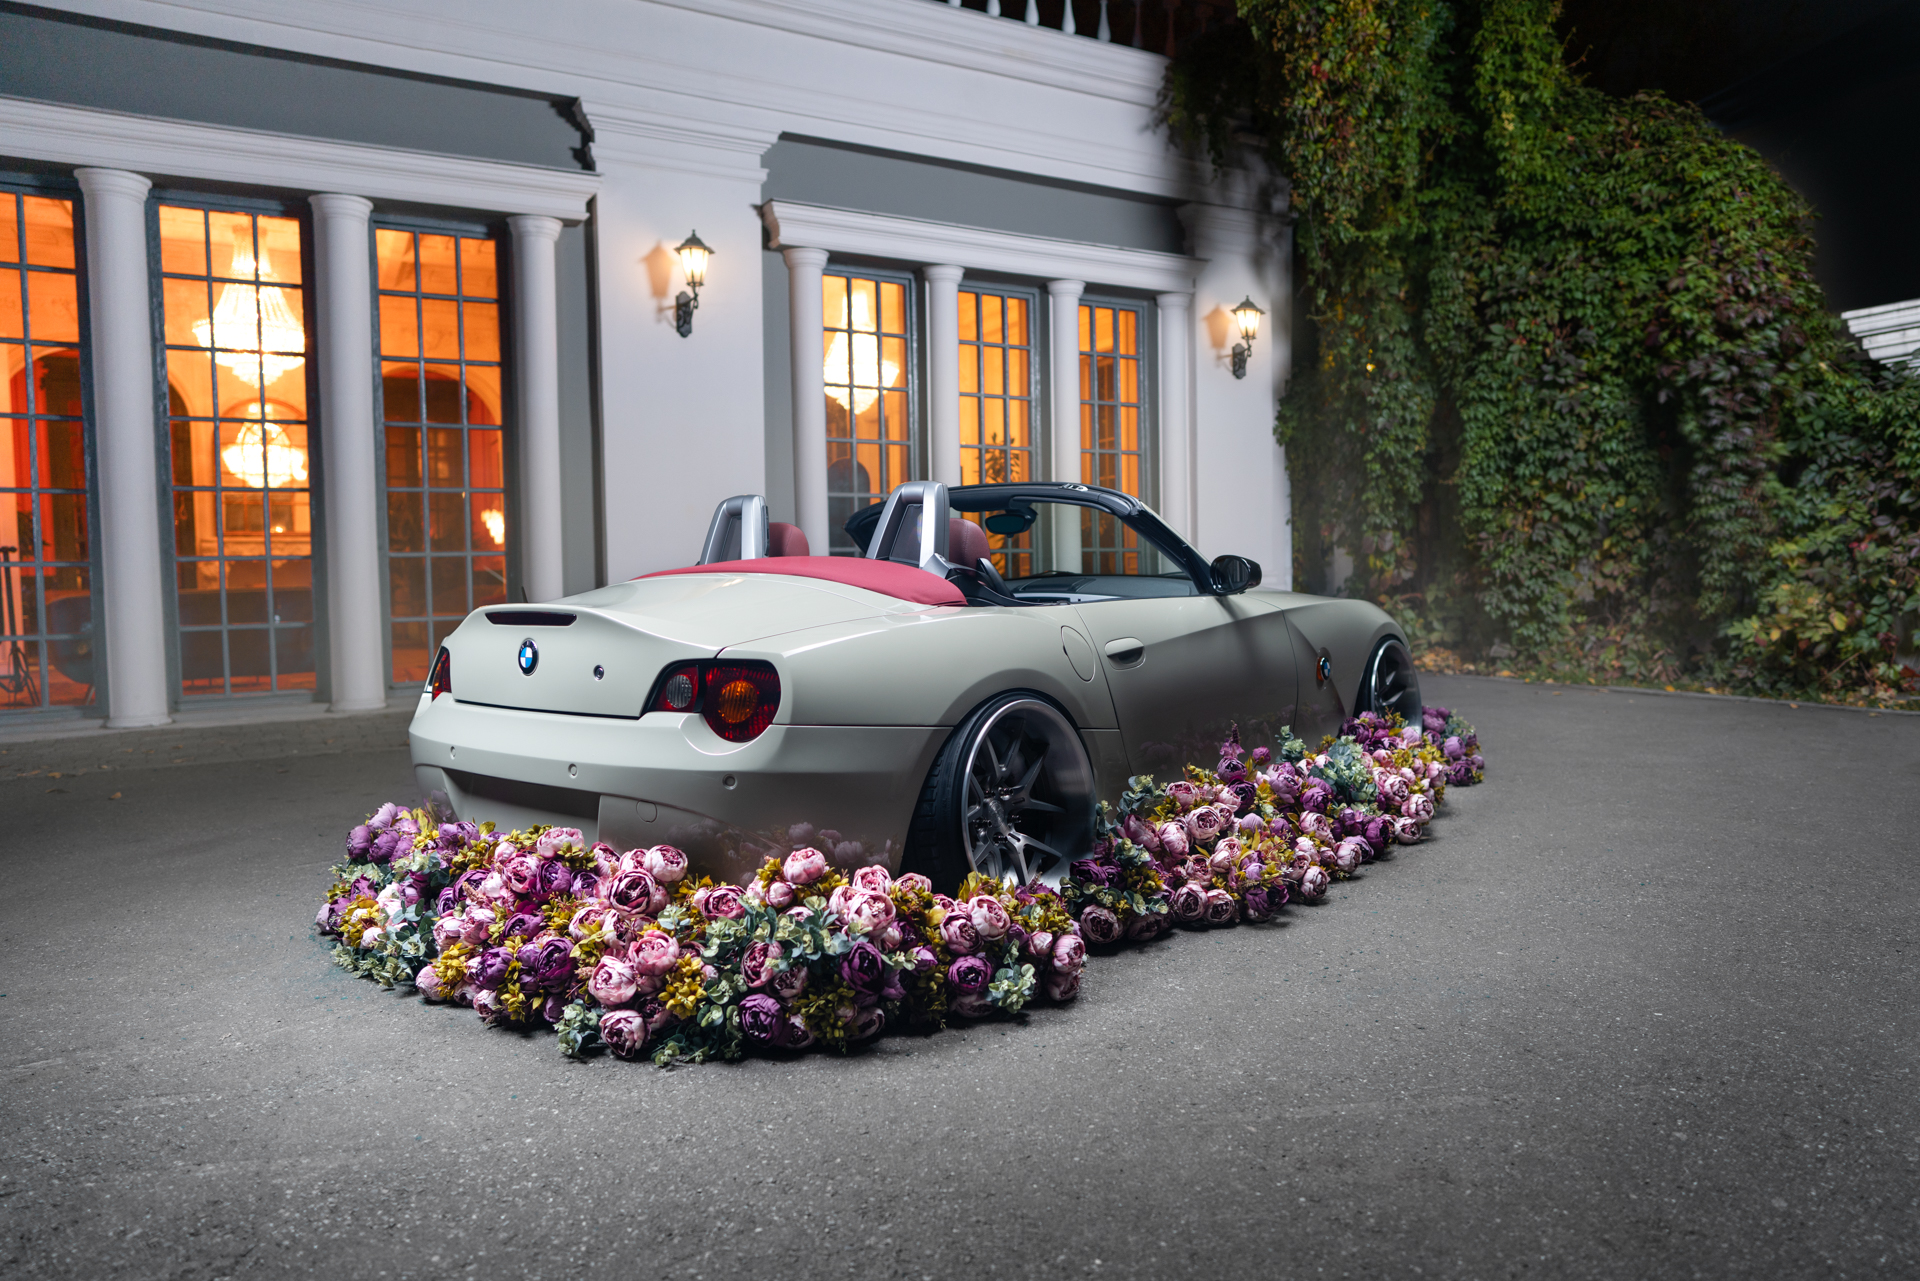 BMW Z4 with flowers